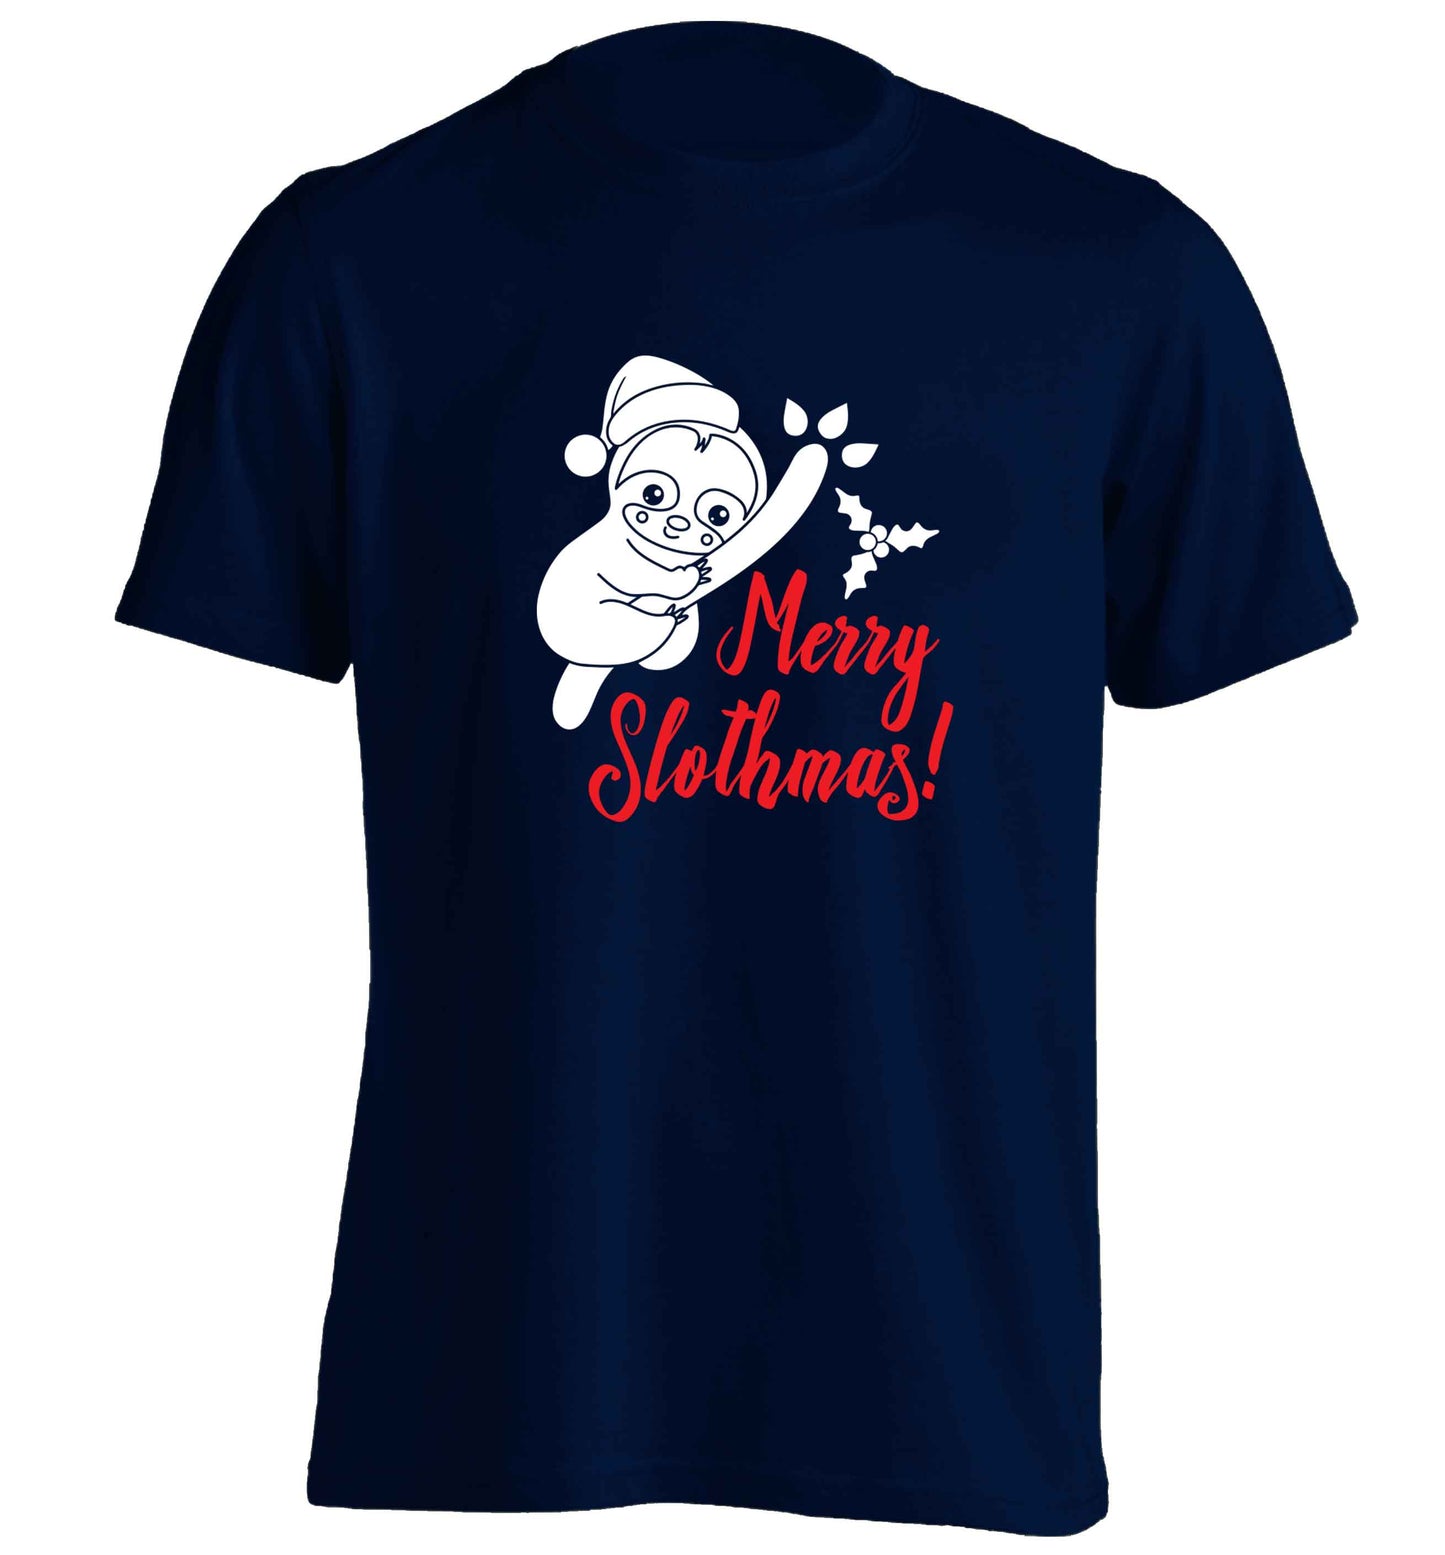 Merry Slothmas adults unisex navy Tshirt 2XL